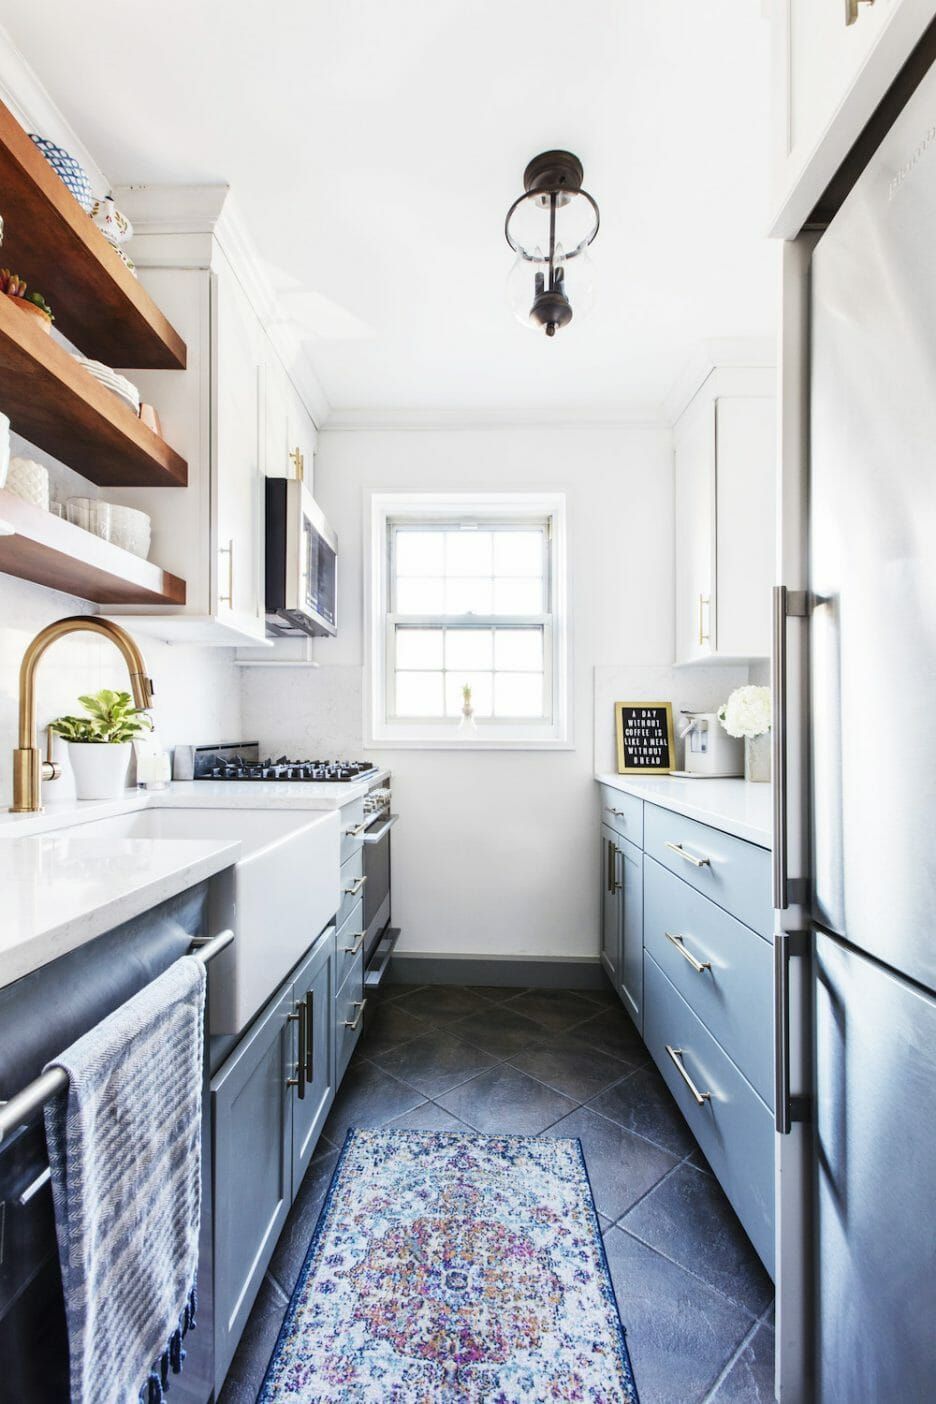 Stunning galley kitchen design photo gallery 15 Best Galley Kitchen Design Ideas Remodel Tips For Kitchens